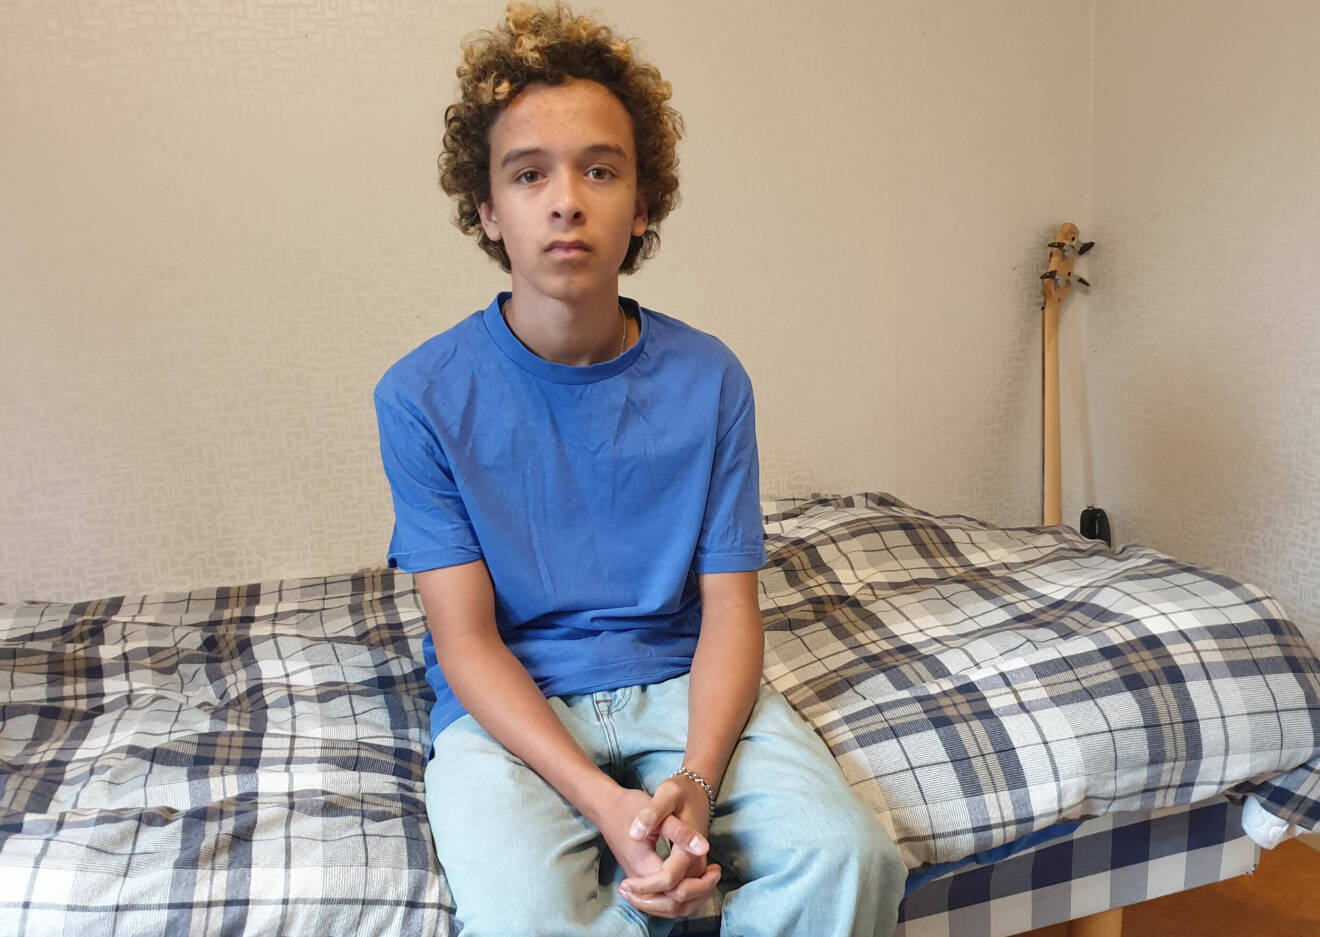 Dan Michael Broberg, 15, hotas med vräkning efter sin mammas bortgång.